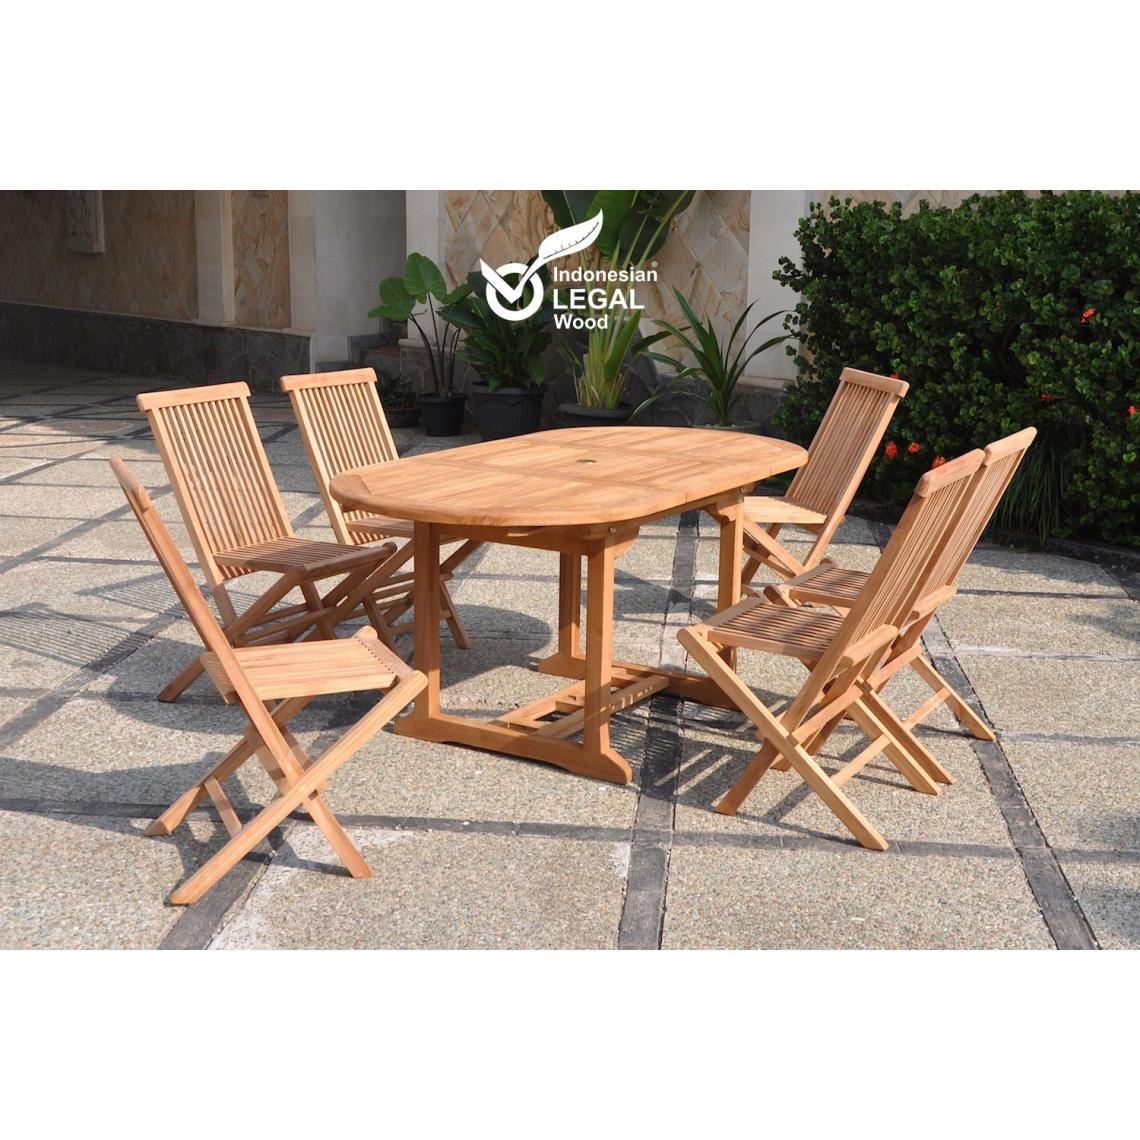 Concept Usine - Kajang : Salon de jardin Teck massif 6 personnes - Table ovale + 6 chaises - Ensembles tables et chaises